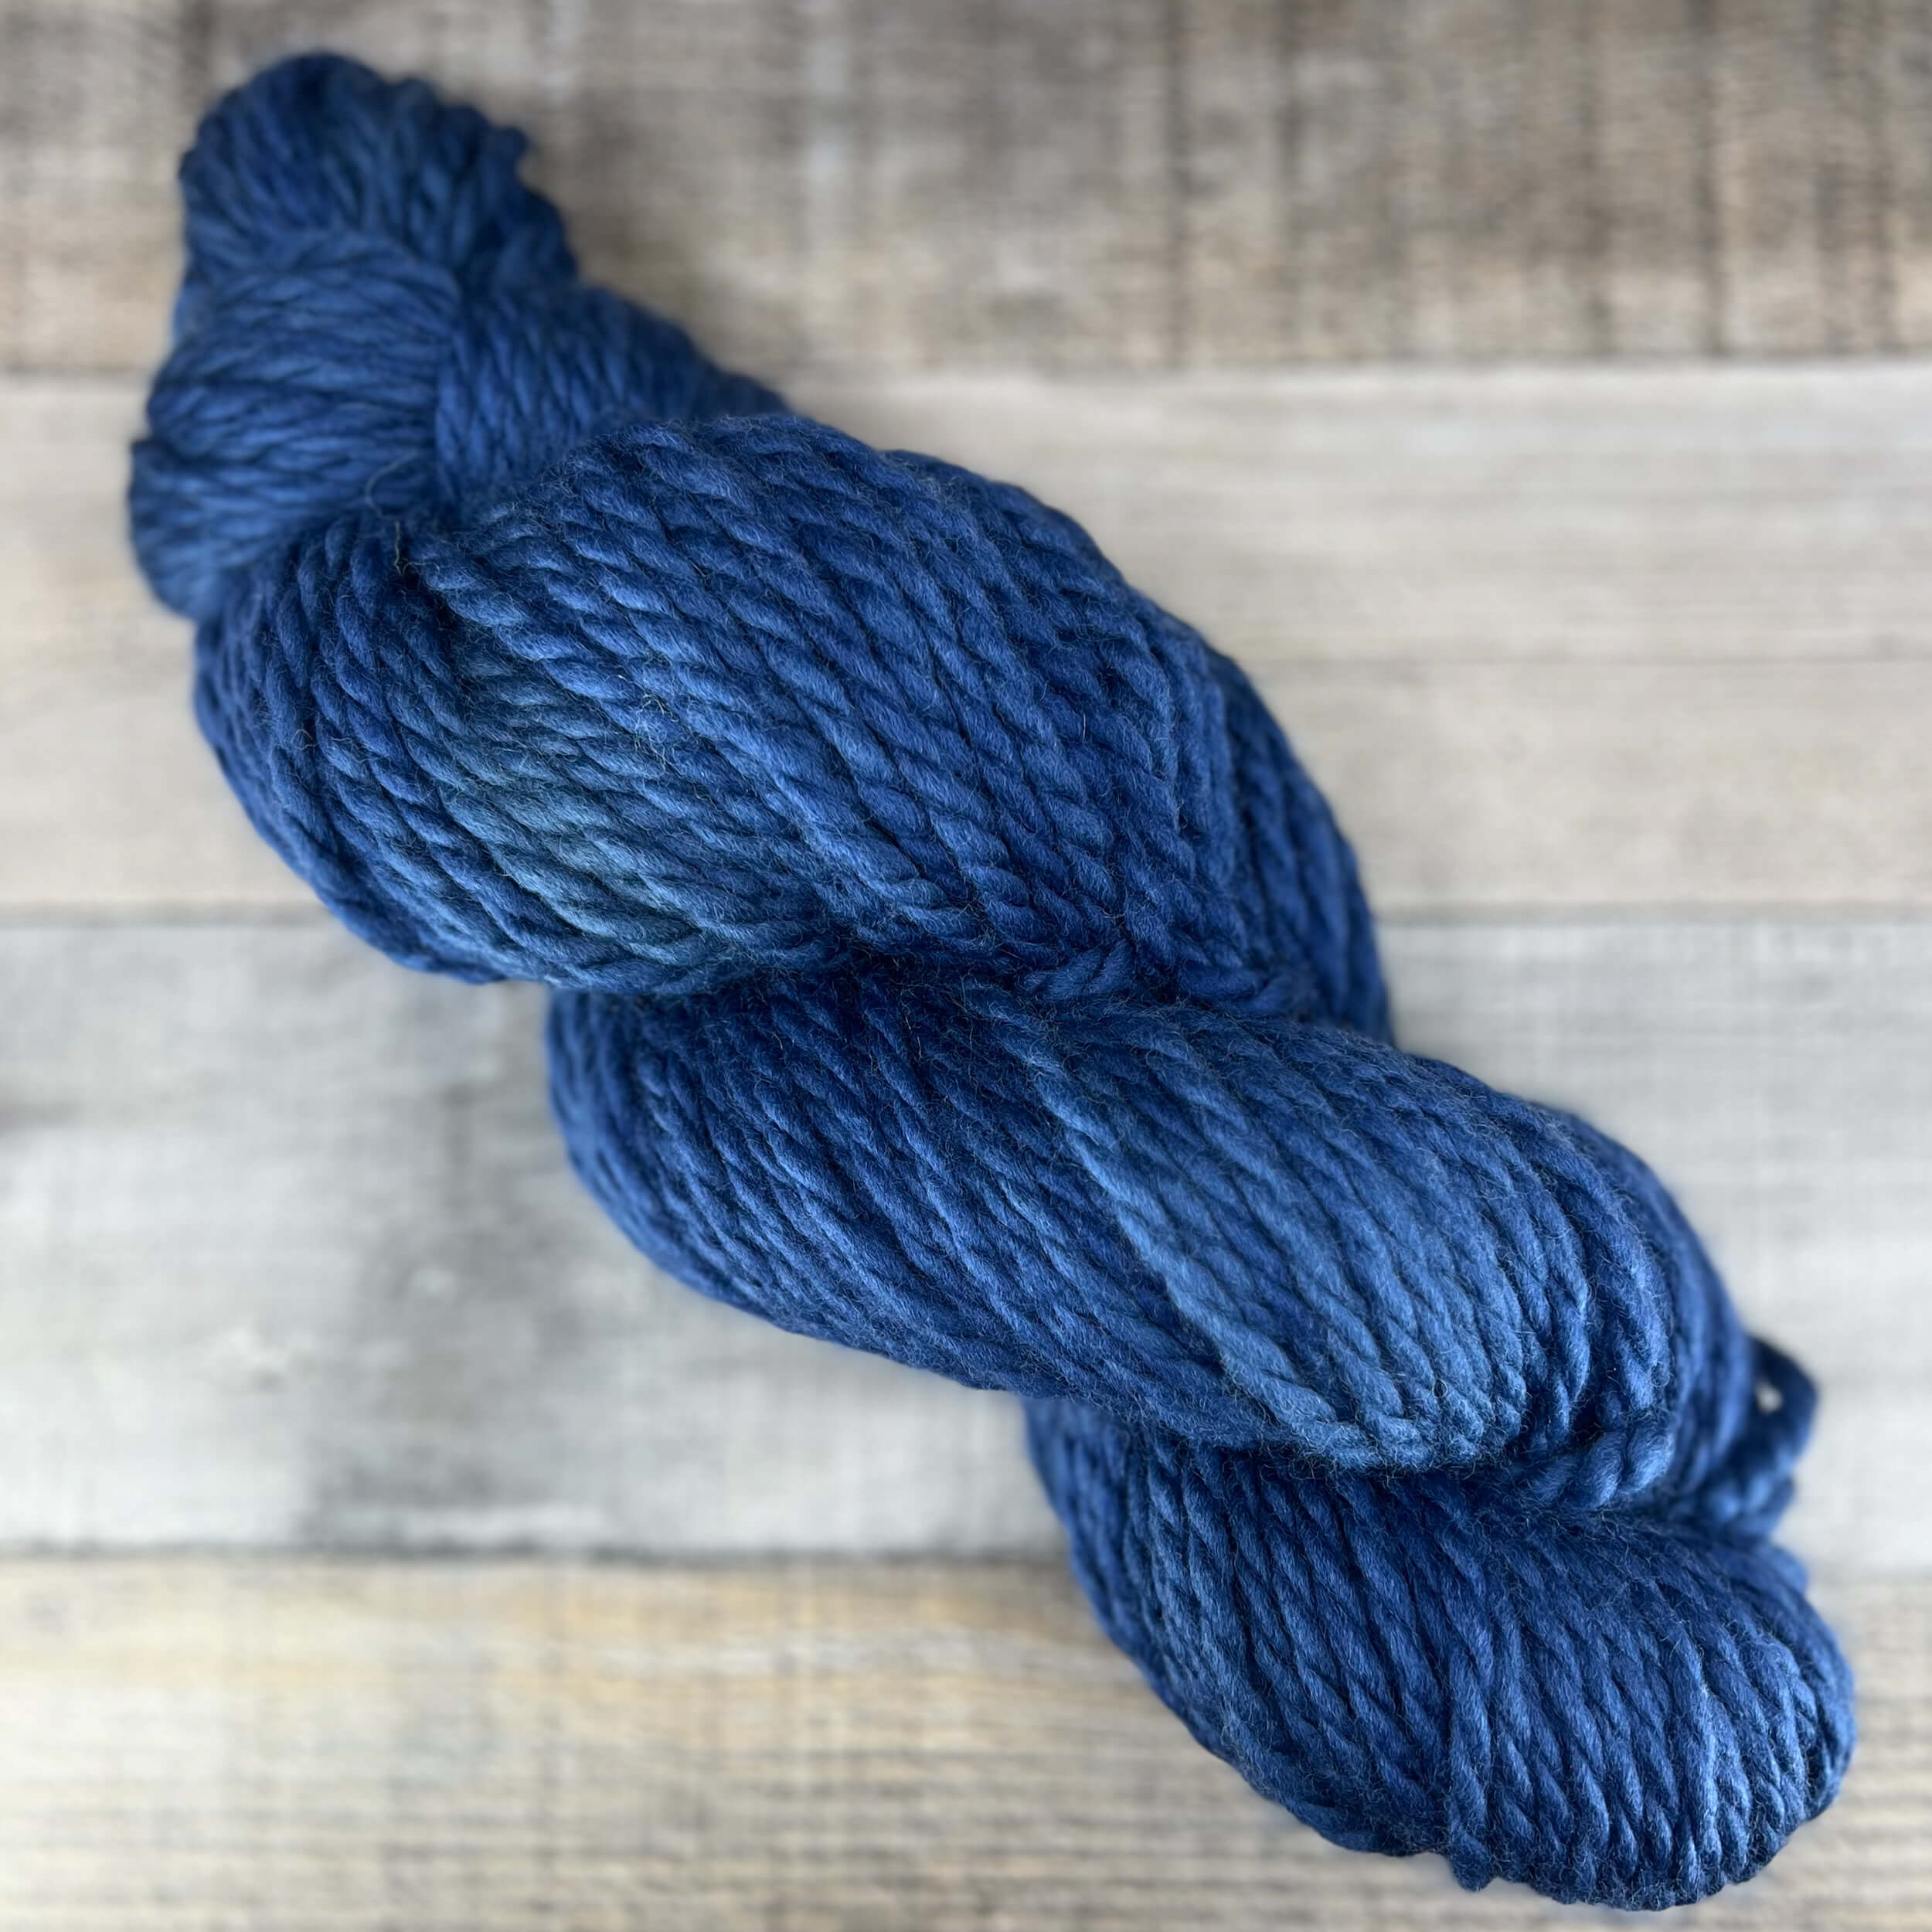 Coastal Fog hand dyed yarn in tonal light blue, gray blue - Destination Yarn